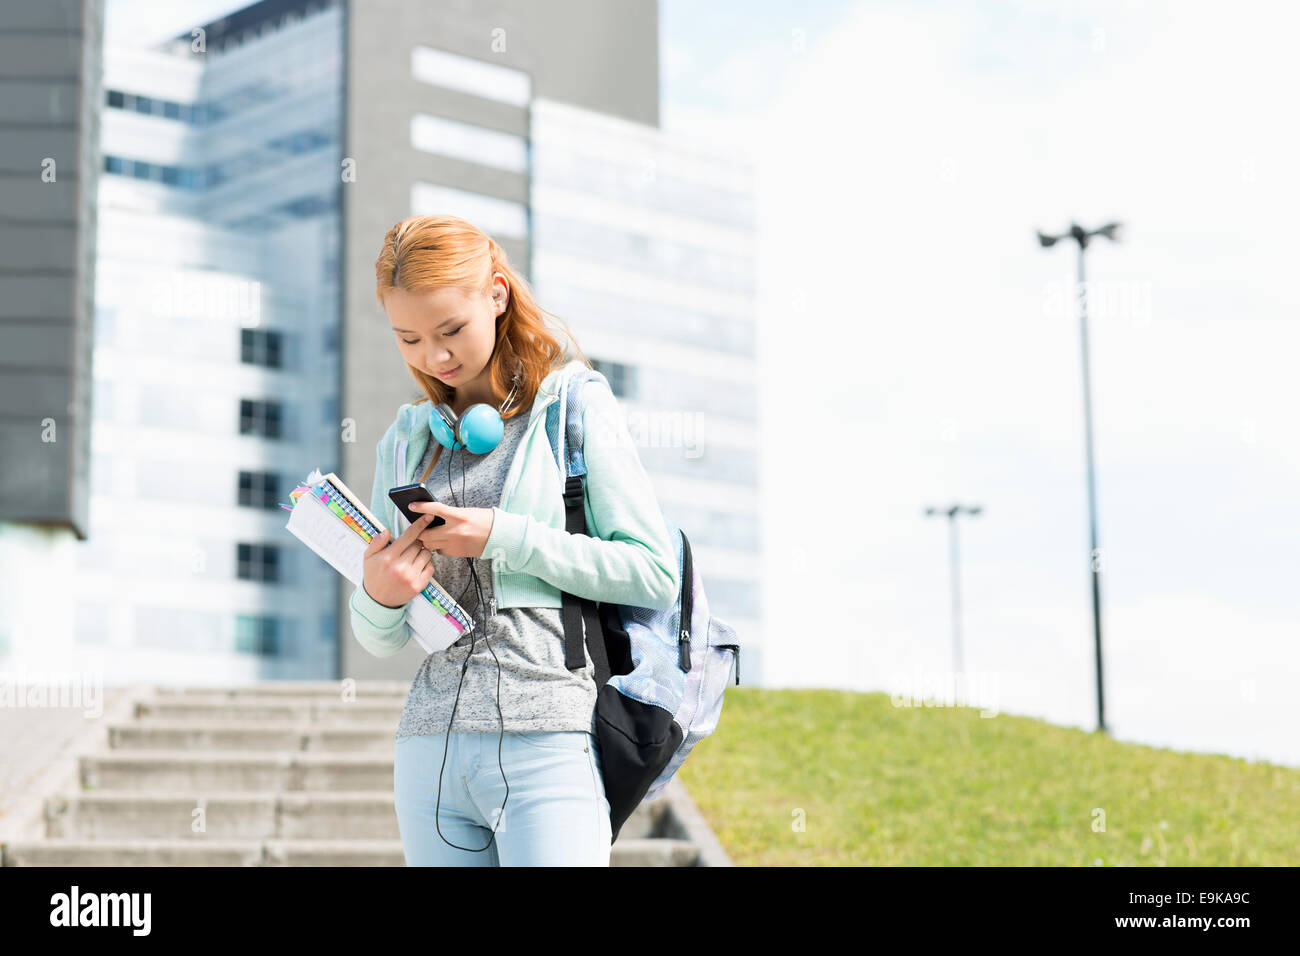 Junge Frau mit Smartphone am College campus Stockfoto